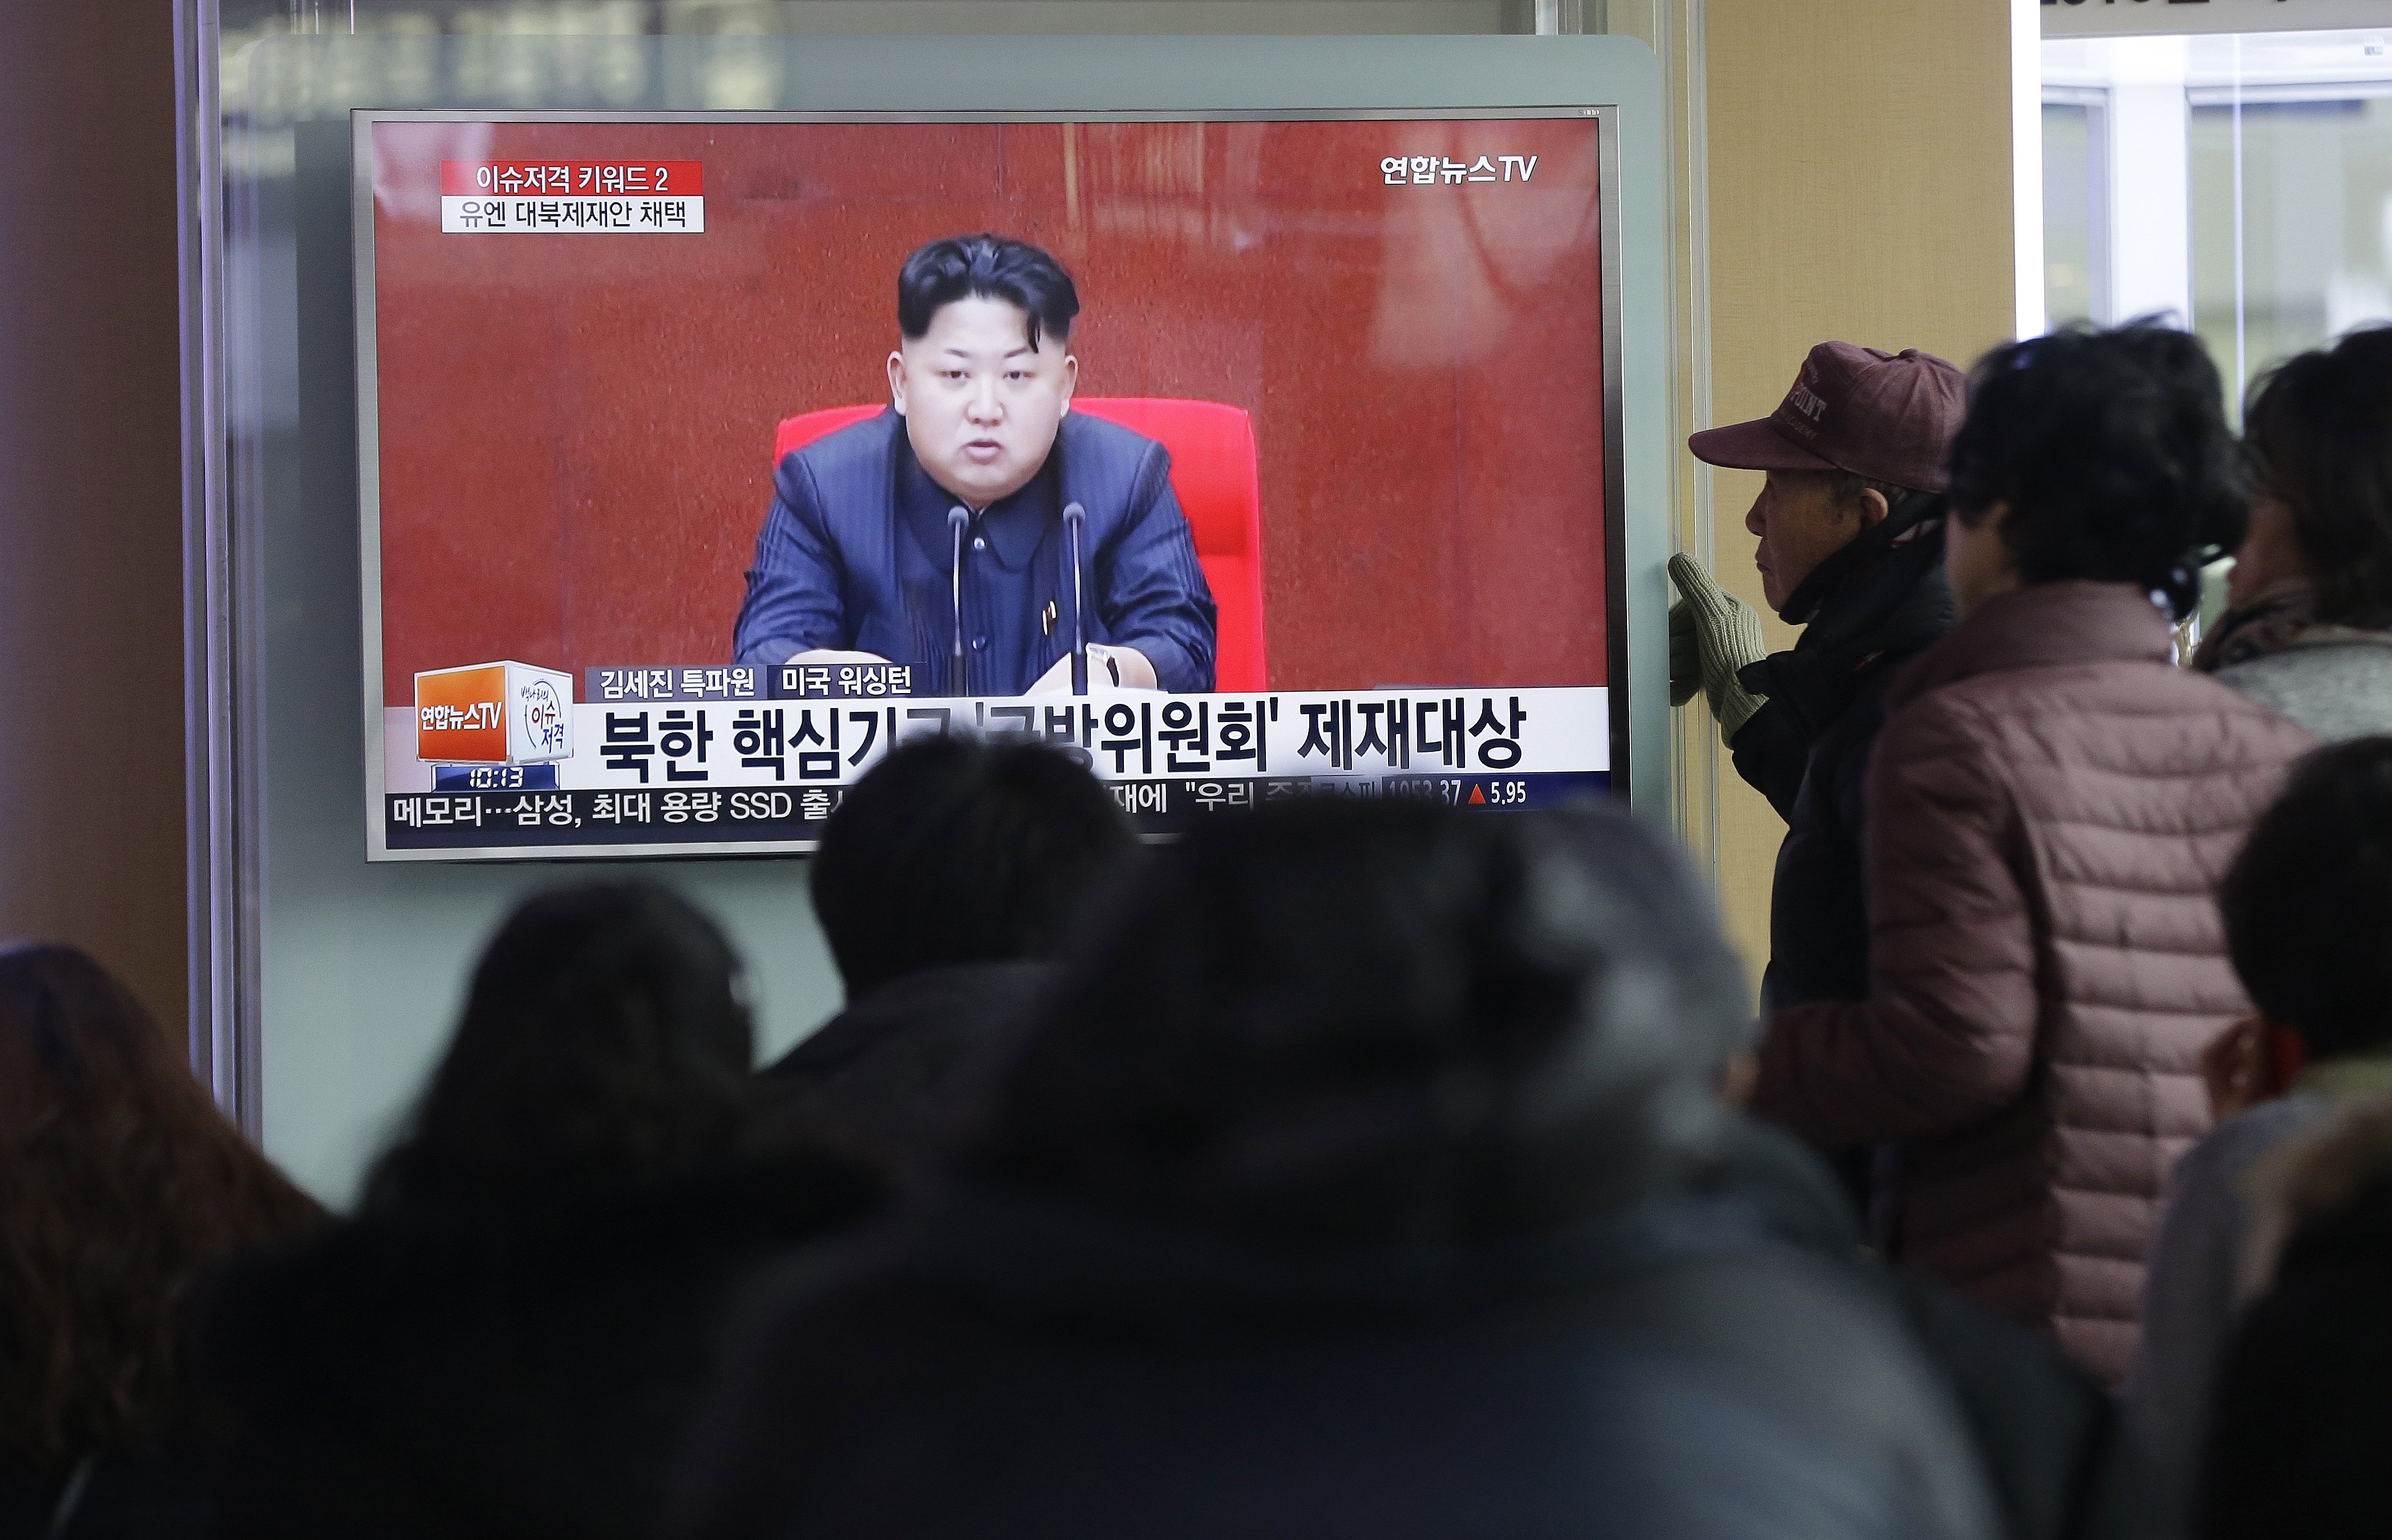  Corea del Norte ejecutó a ministro de educación